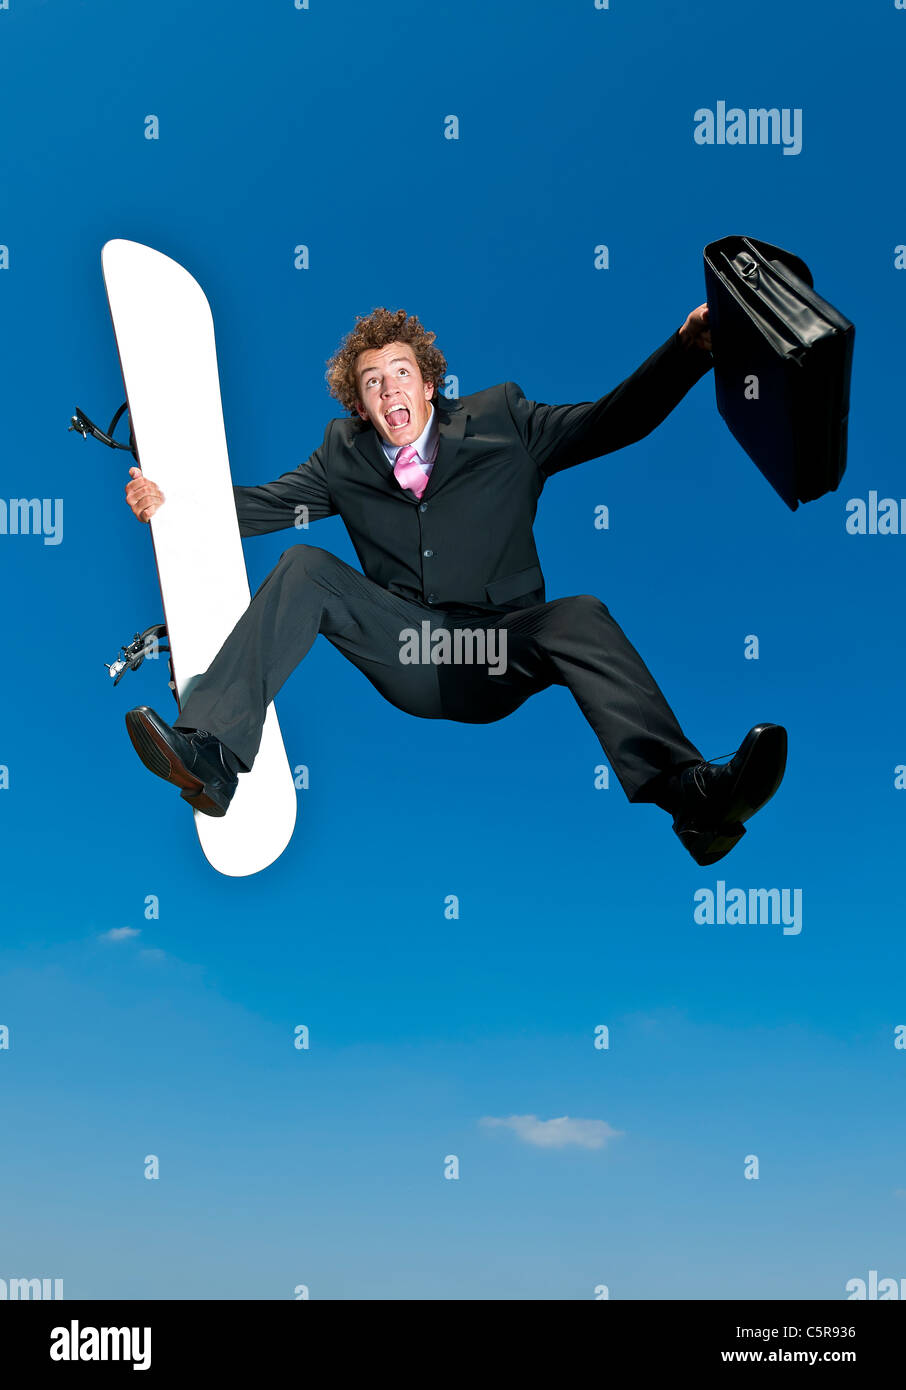 Ein Geschäftsmann freut sich auf seinem Snowboard Urlaub wegzukommen. Stockfoto